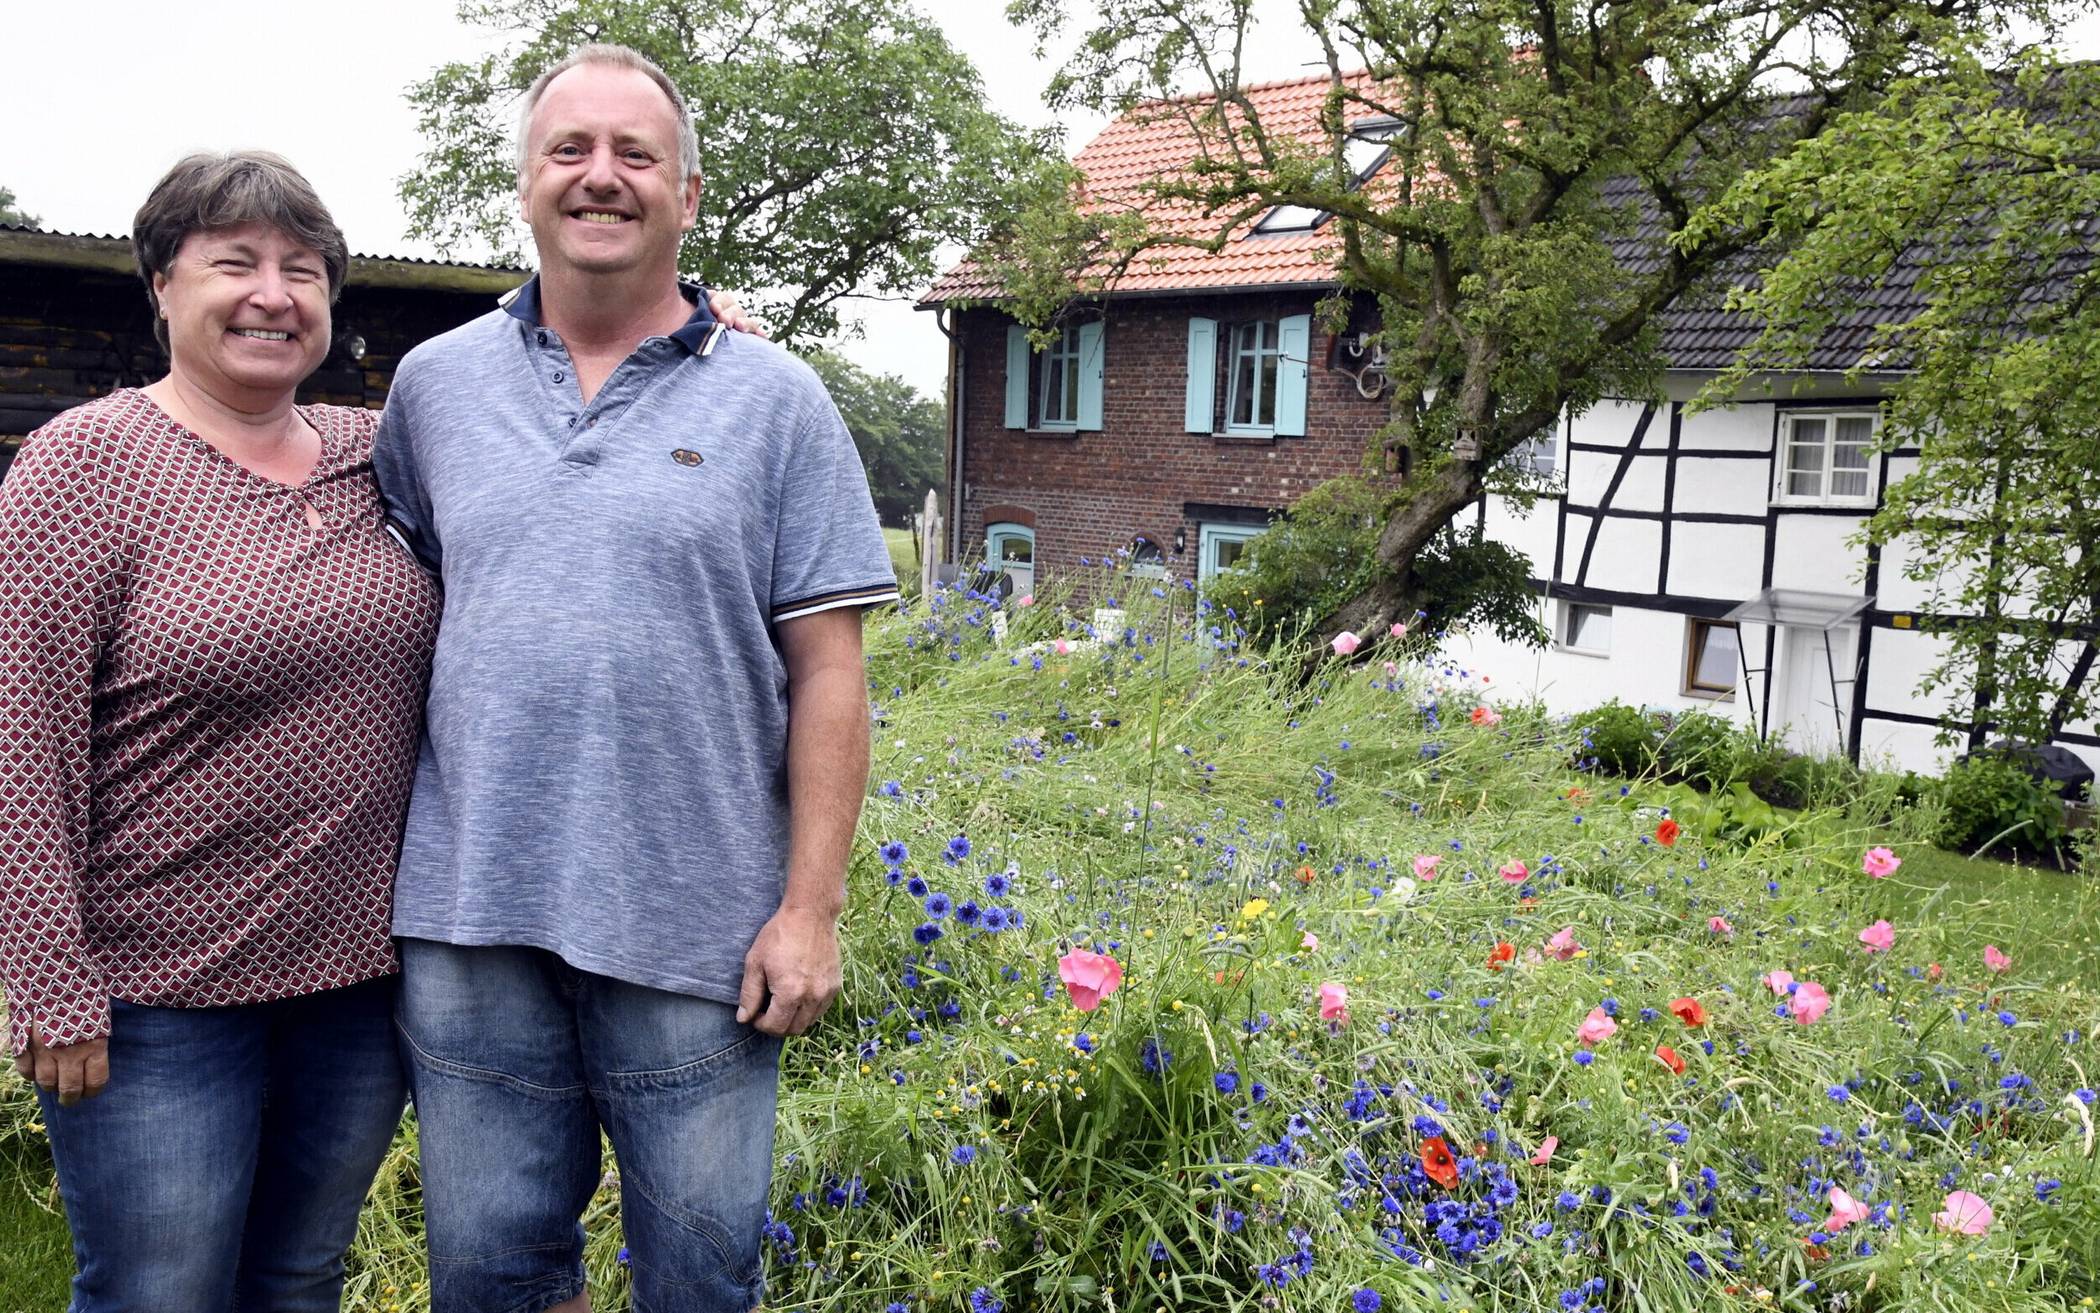  Sabine Weimann-Keseberg und ihr Ehemann Lars Keseberg vor ihrer Wildblumenwiese. 